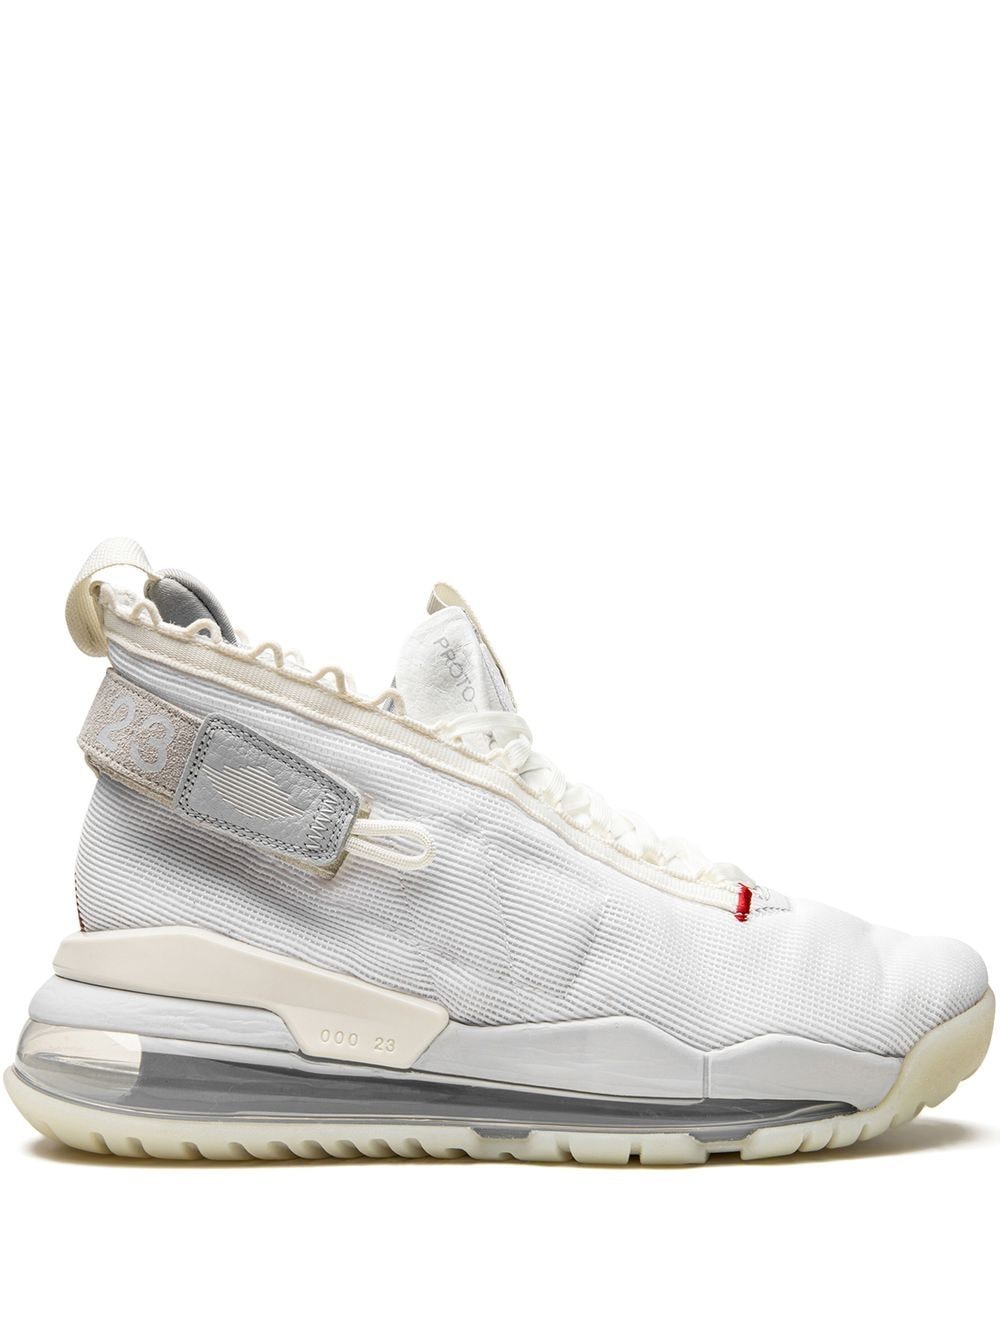 Jordan Jordan Proto Max 720 sneakers - White